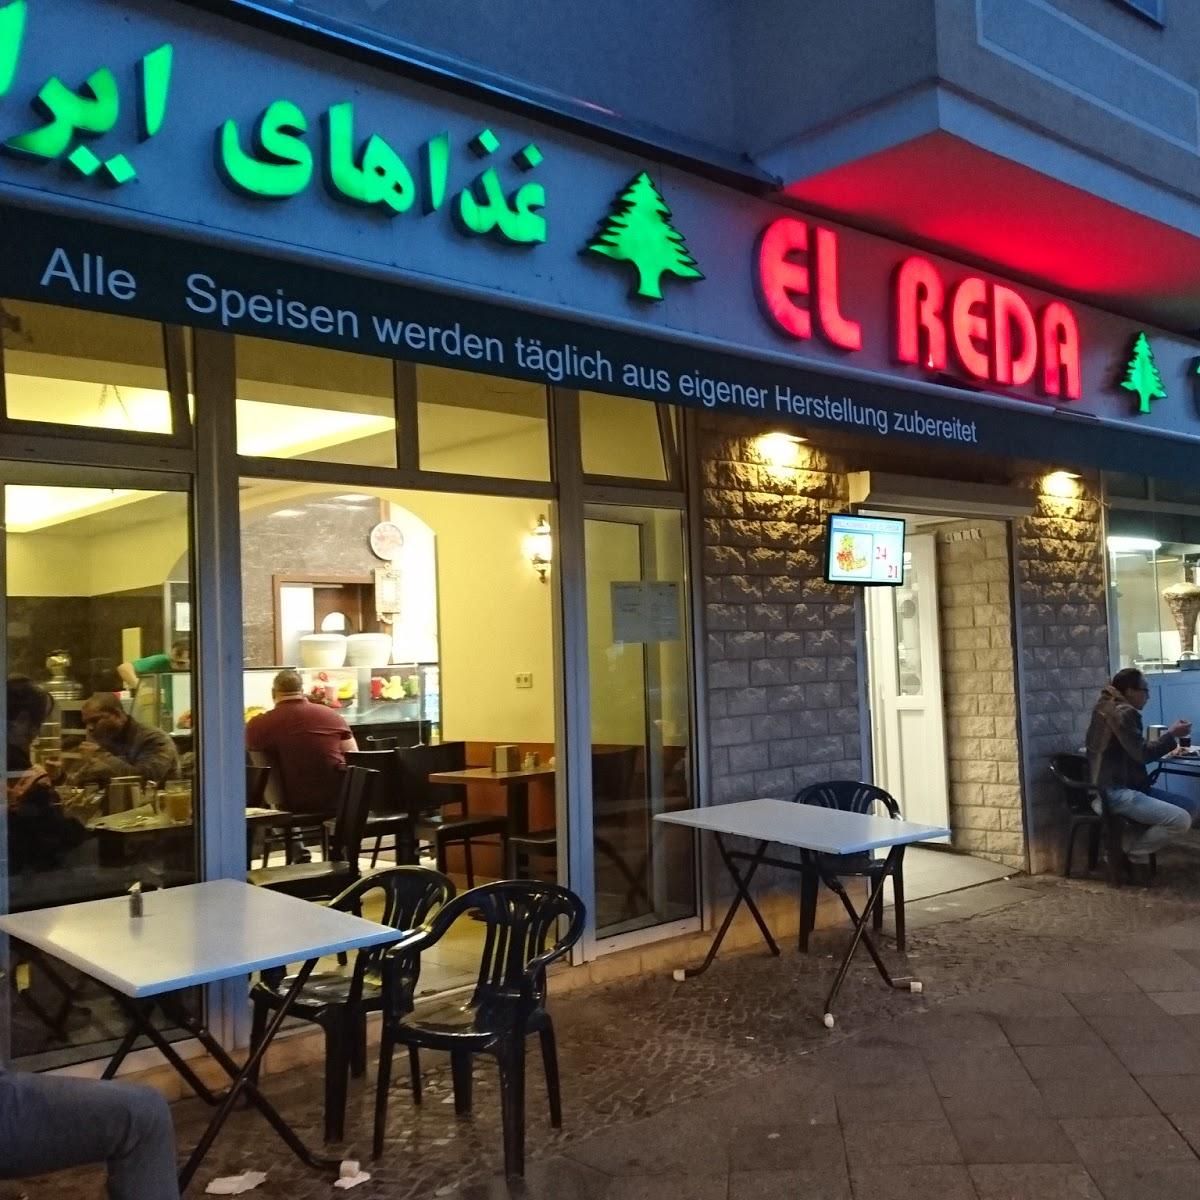 Restaurant "El Reda" in  Berlin